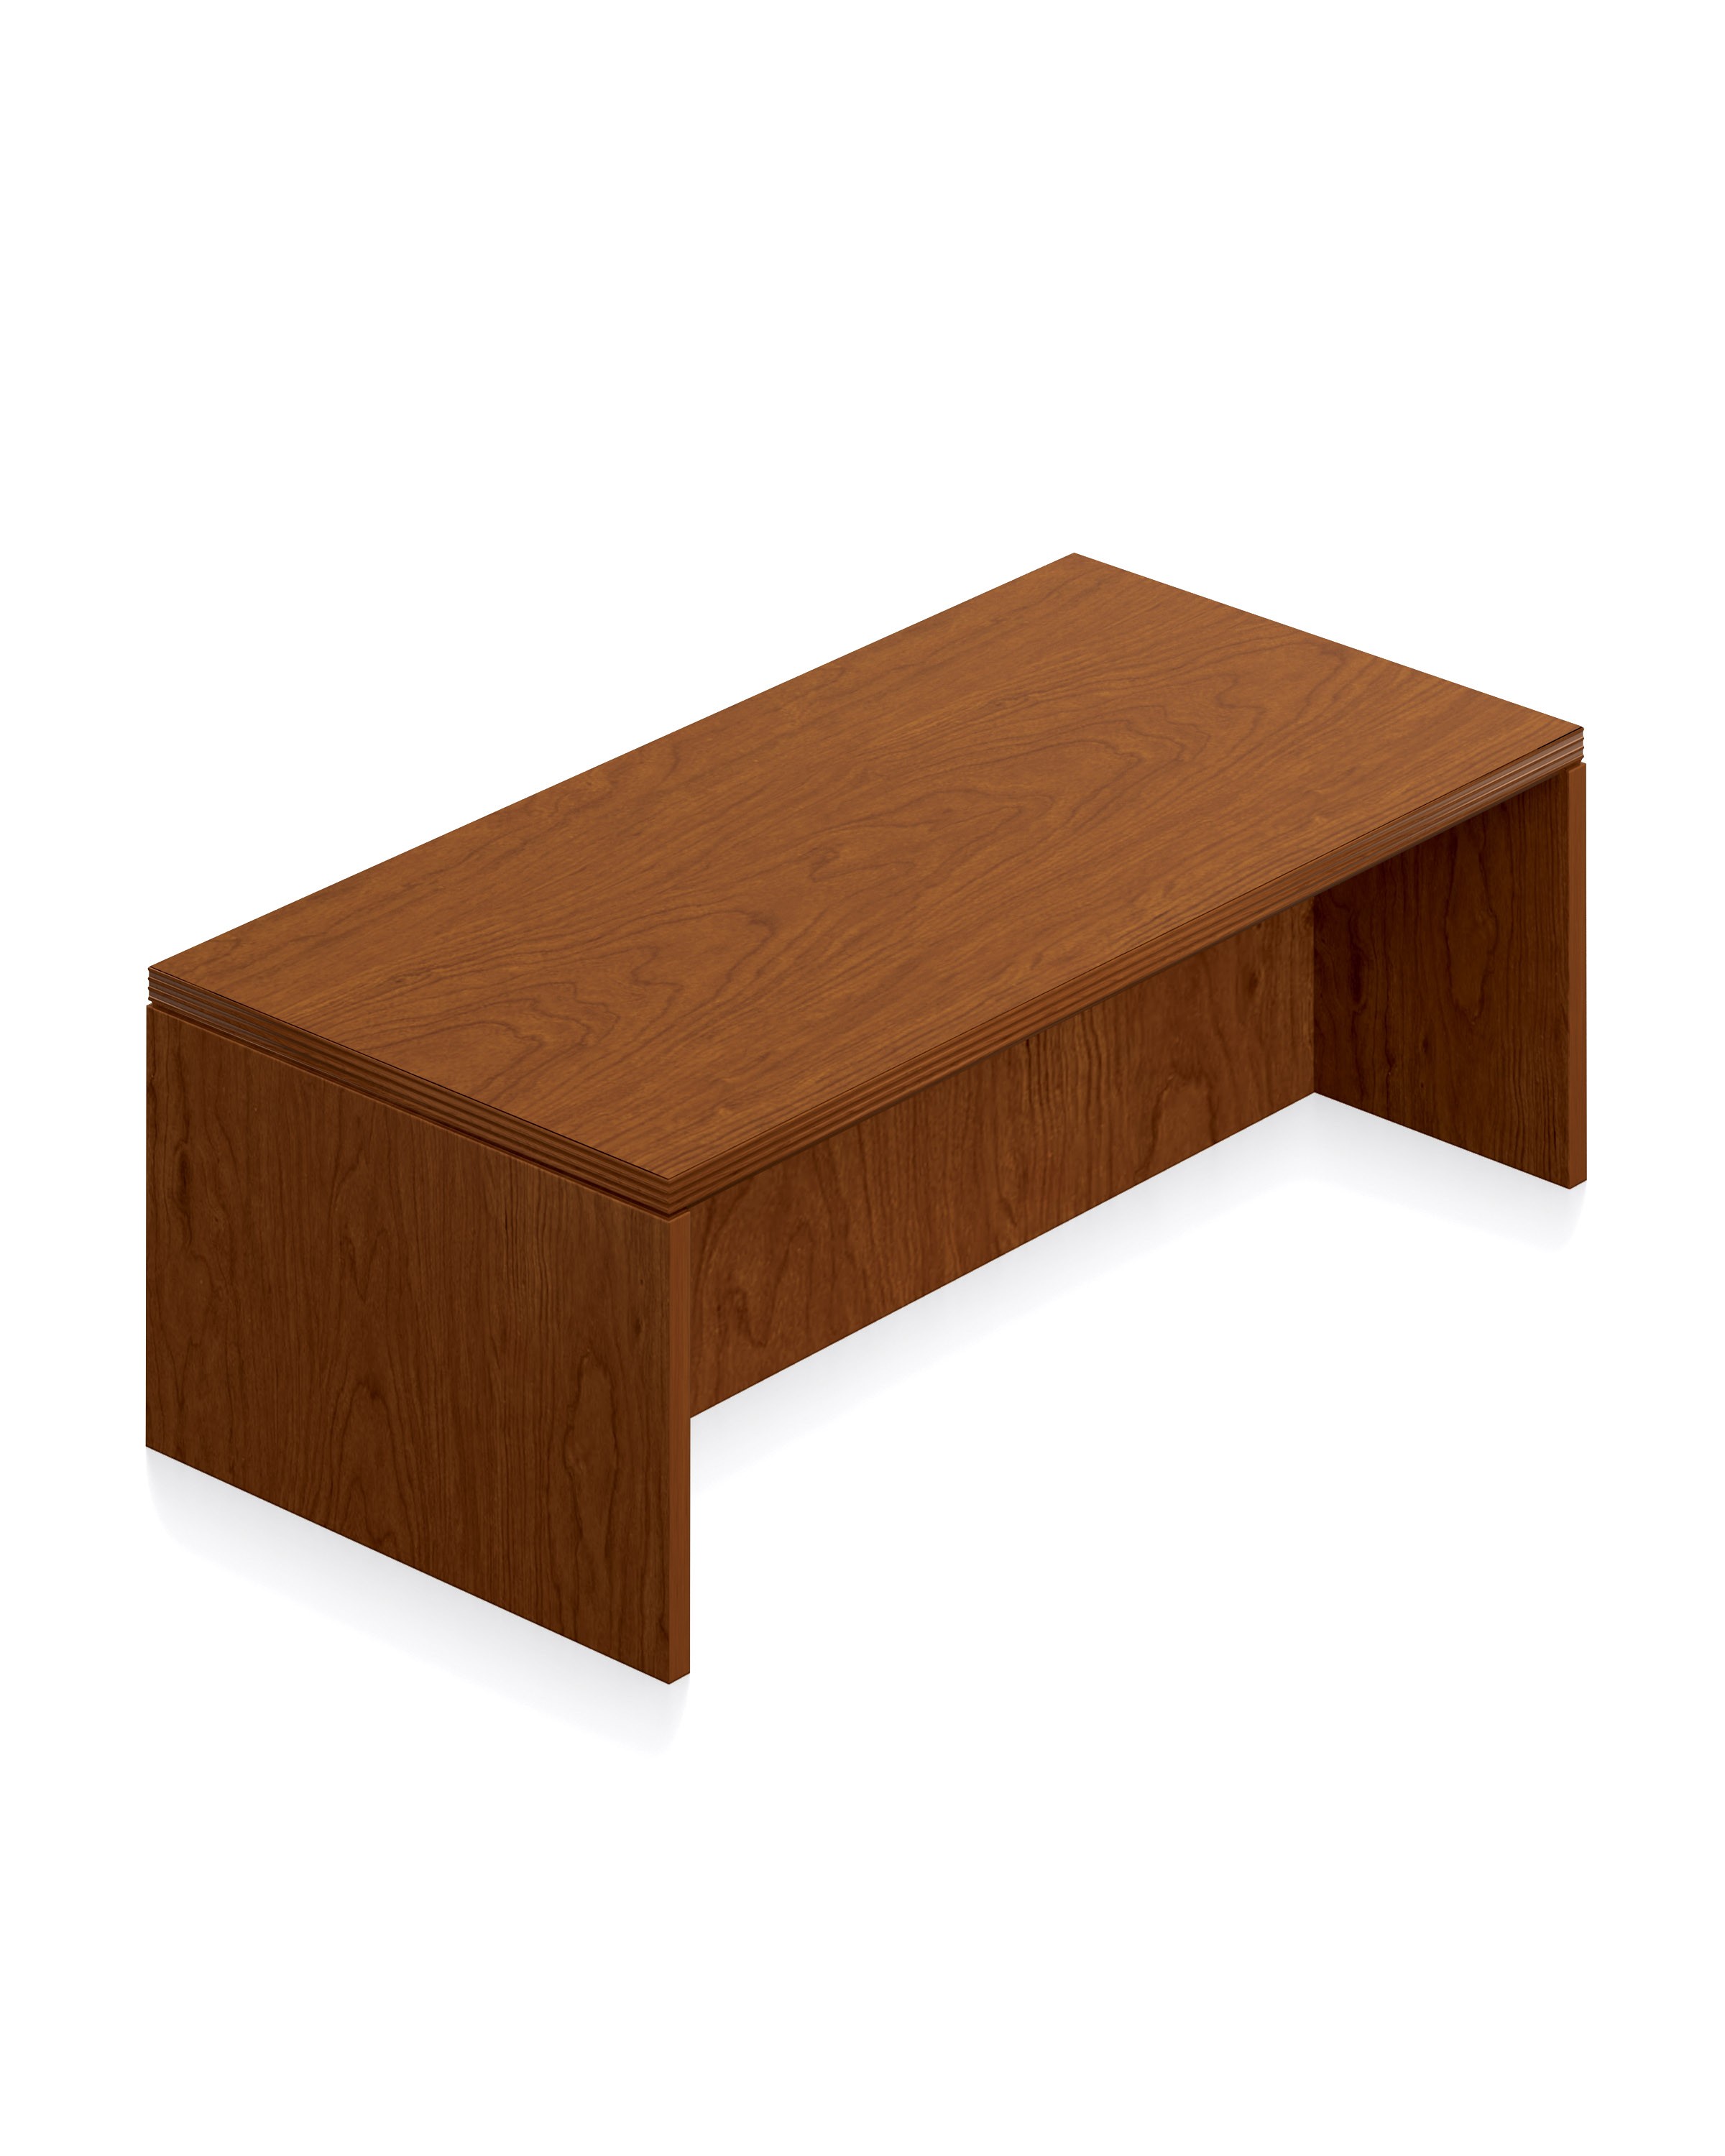  Ventnor Wood Veneer 48" Coffee Table